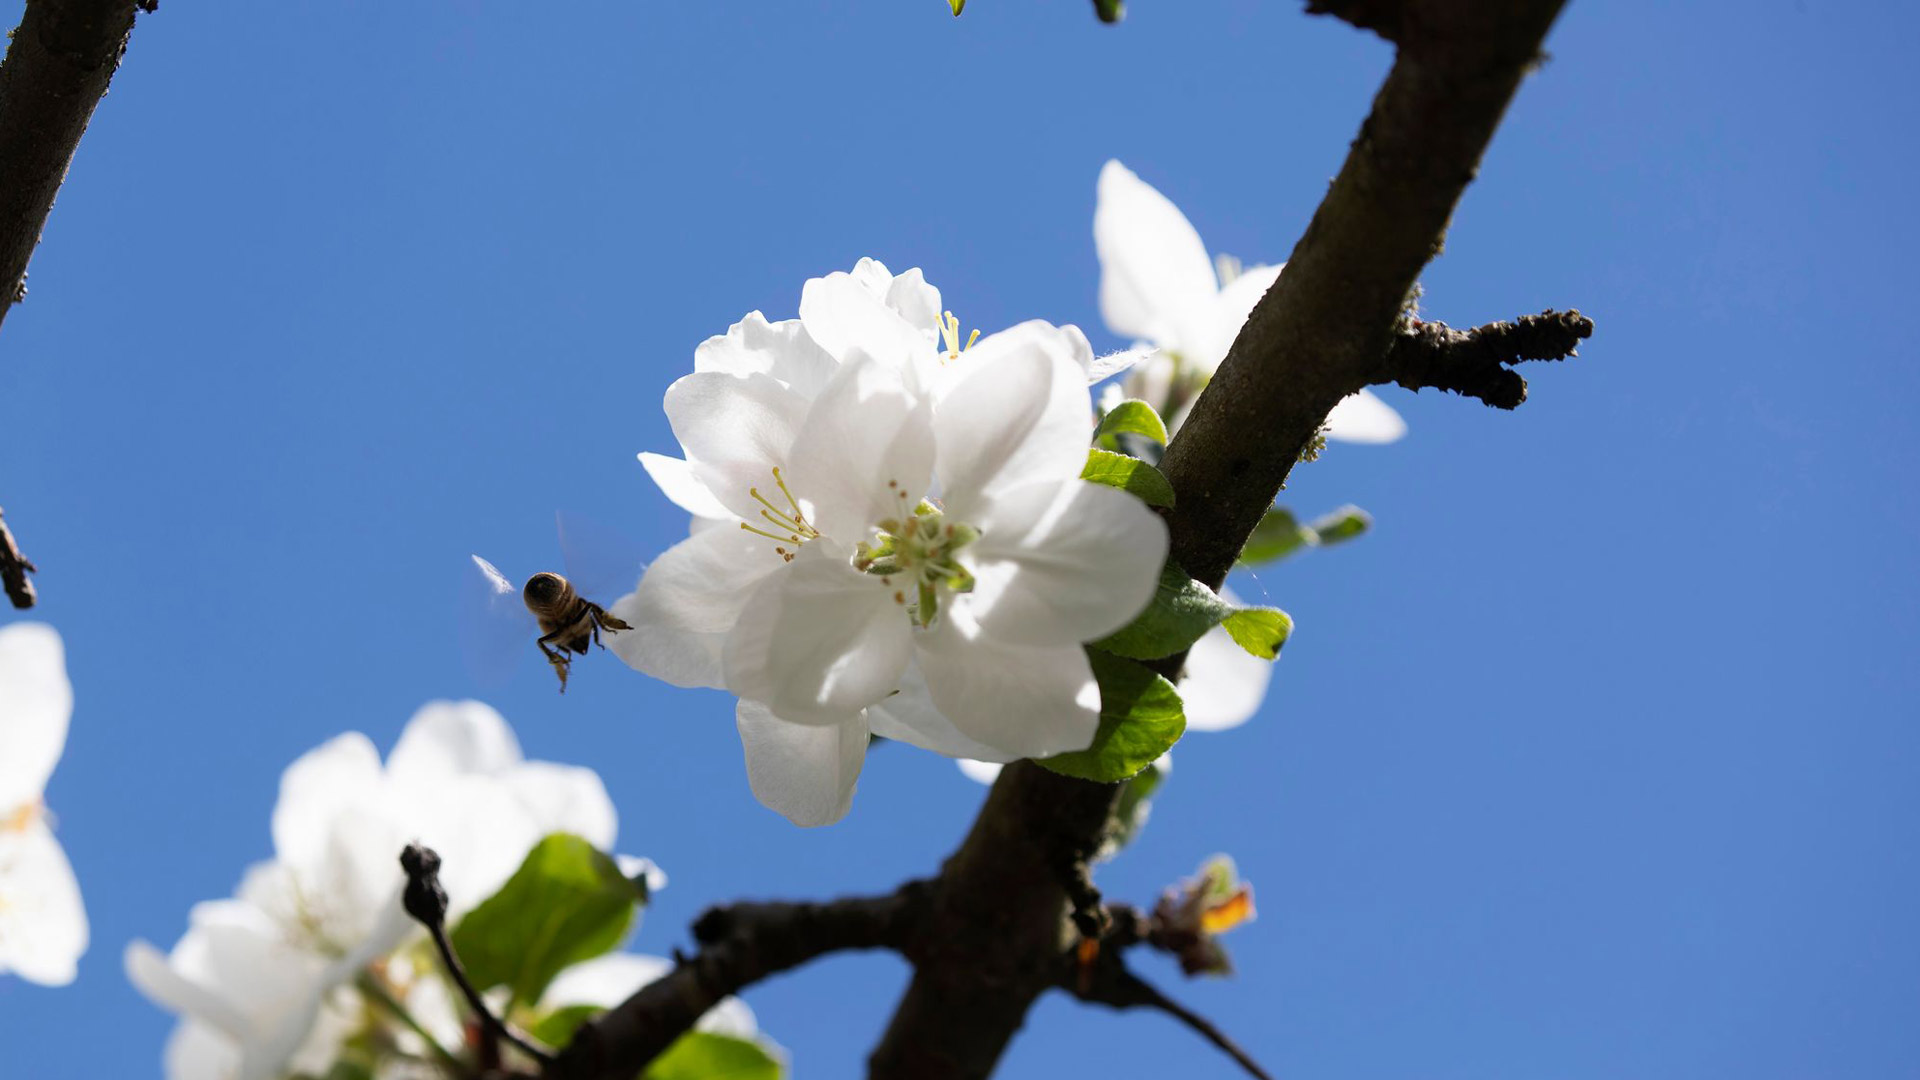 Niemelän pihan omenapuun kukille riitti kesäkuun alussa pölyttäjiä.